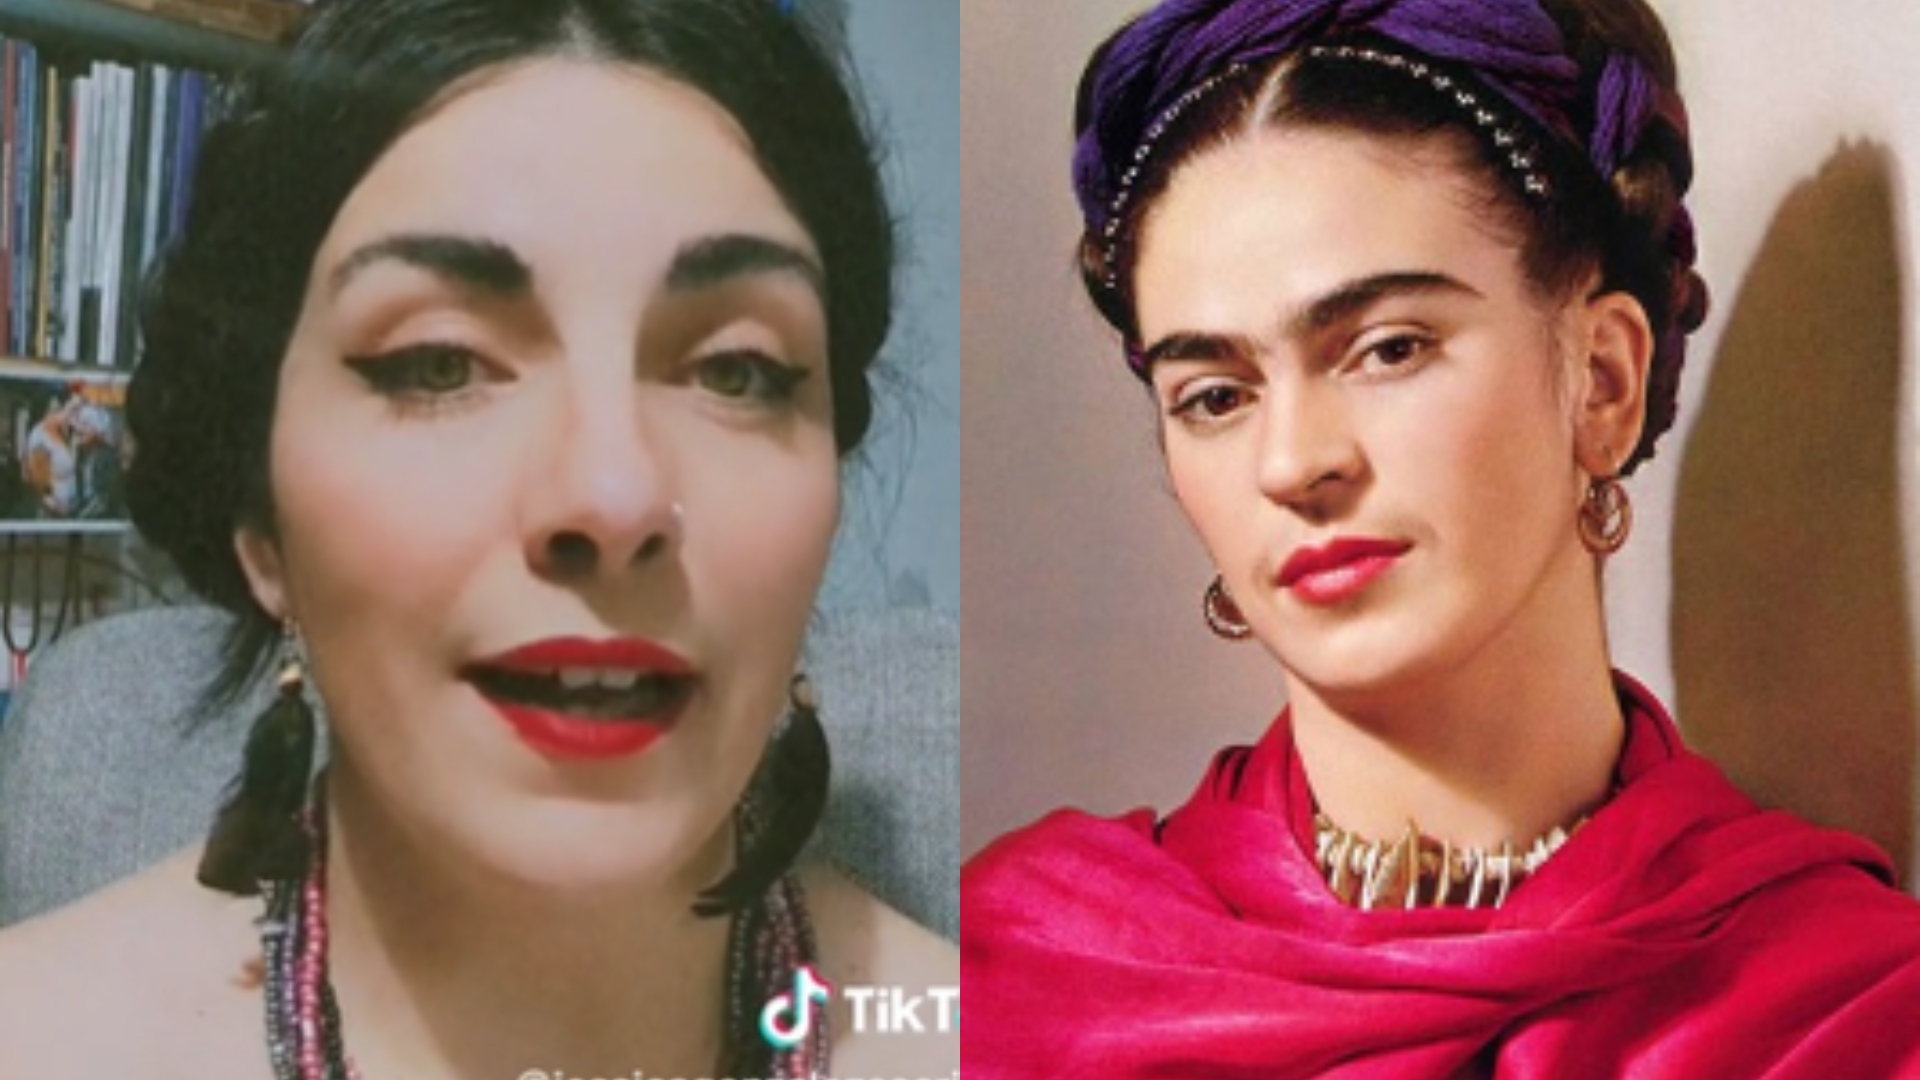 Mujer aseguró que fue Frida Kahlo en otra vida; se dio cuenta porque soñó con “La Casa Azul” sin conocerla